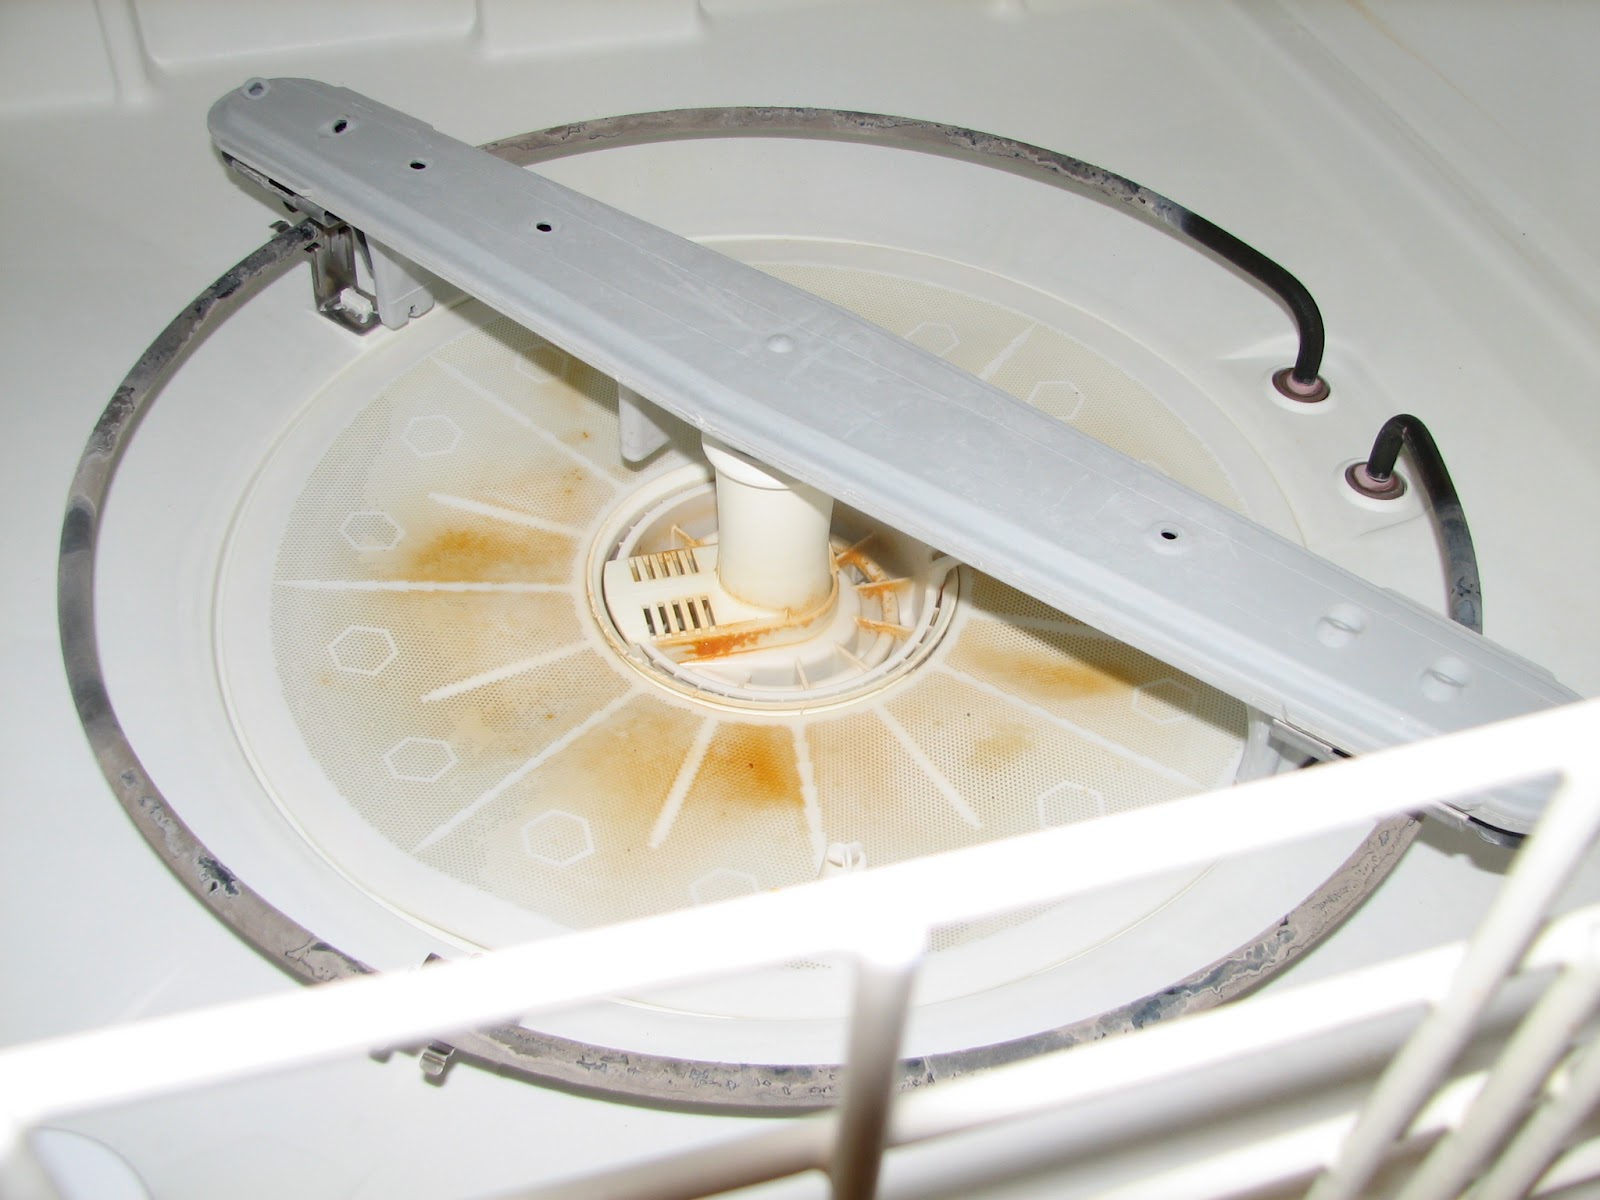 How do you deodorize a dishwasher?